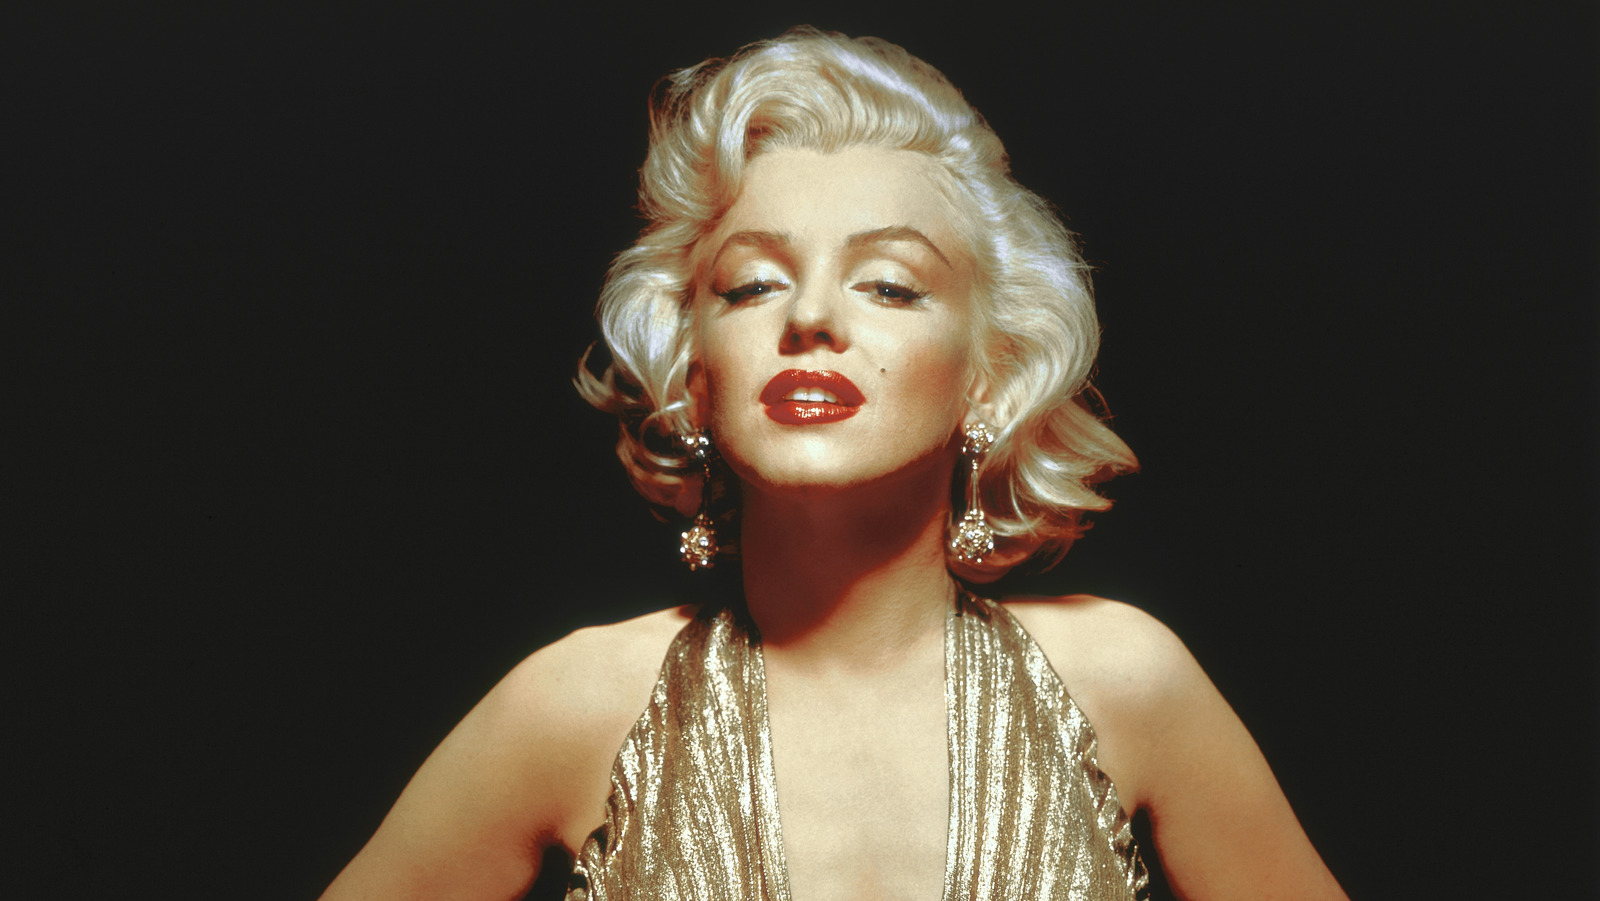 5. Short Blonde Marilyn Monroe Costume - wide 1